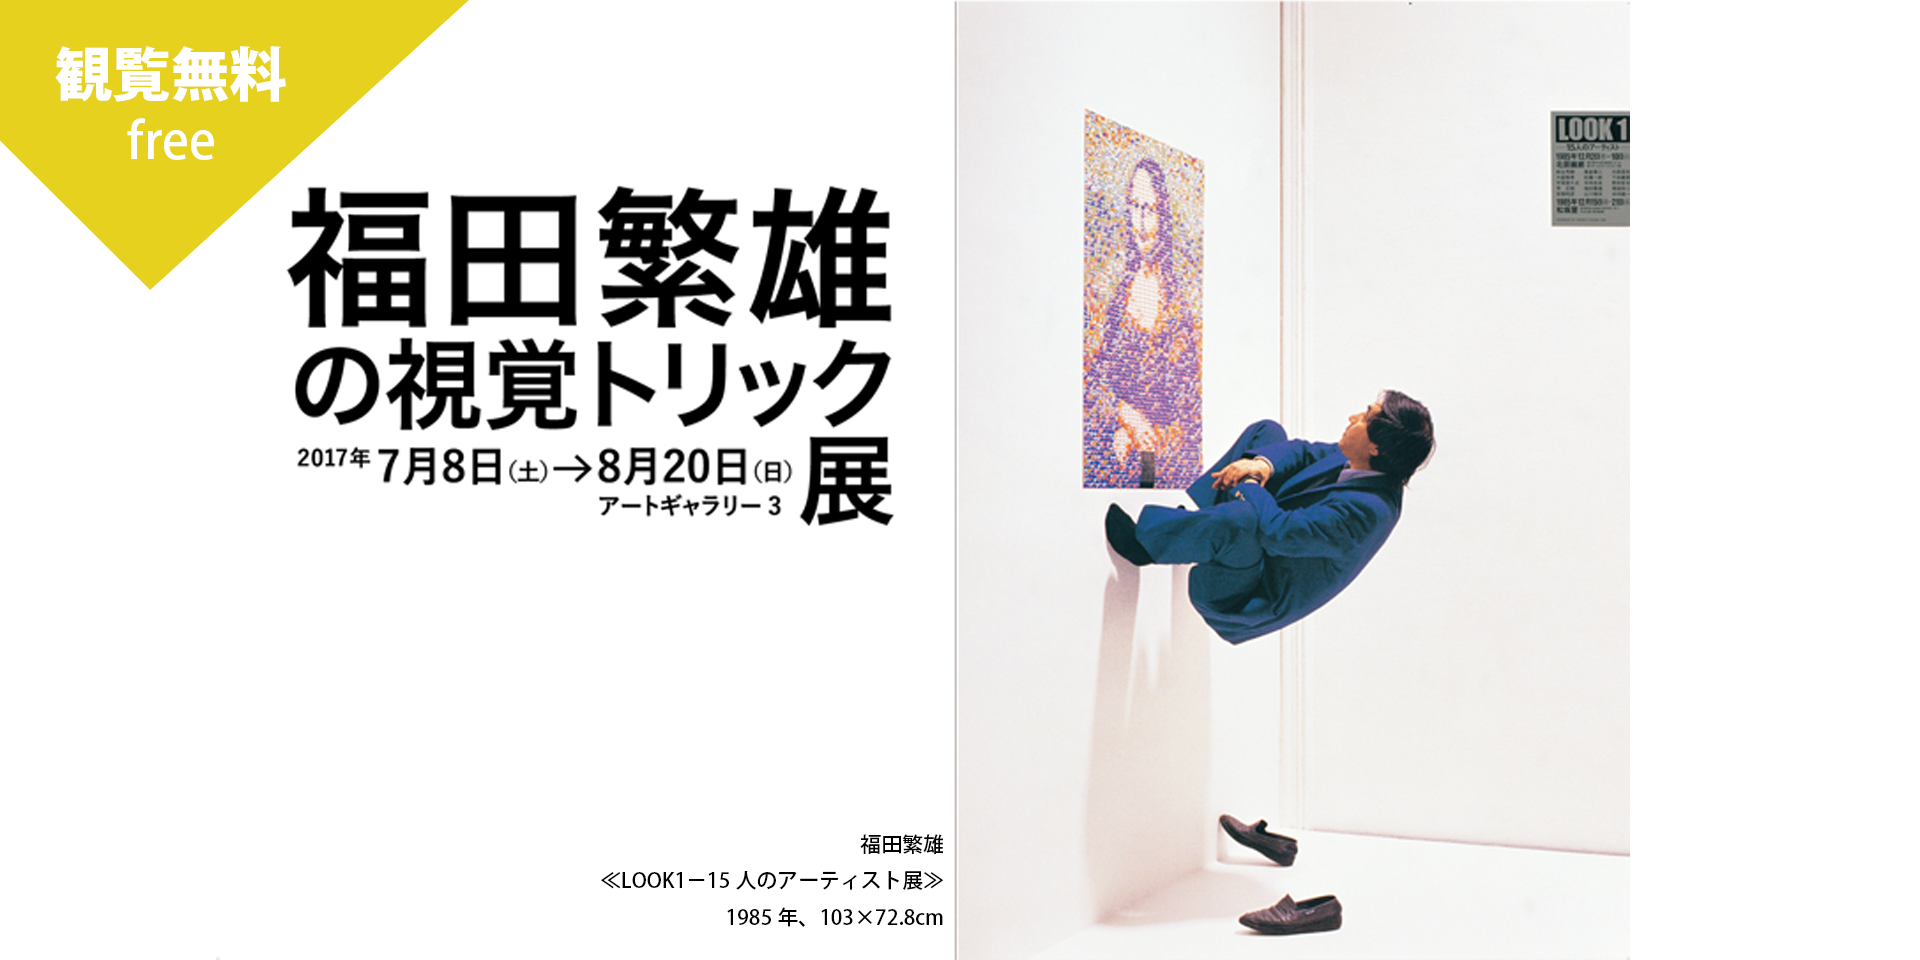 福田繁雄の視覚トリック展 | 川崎市市民ミュージアム